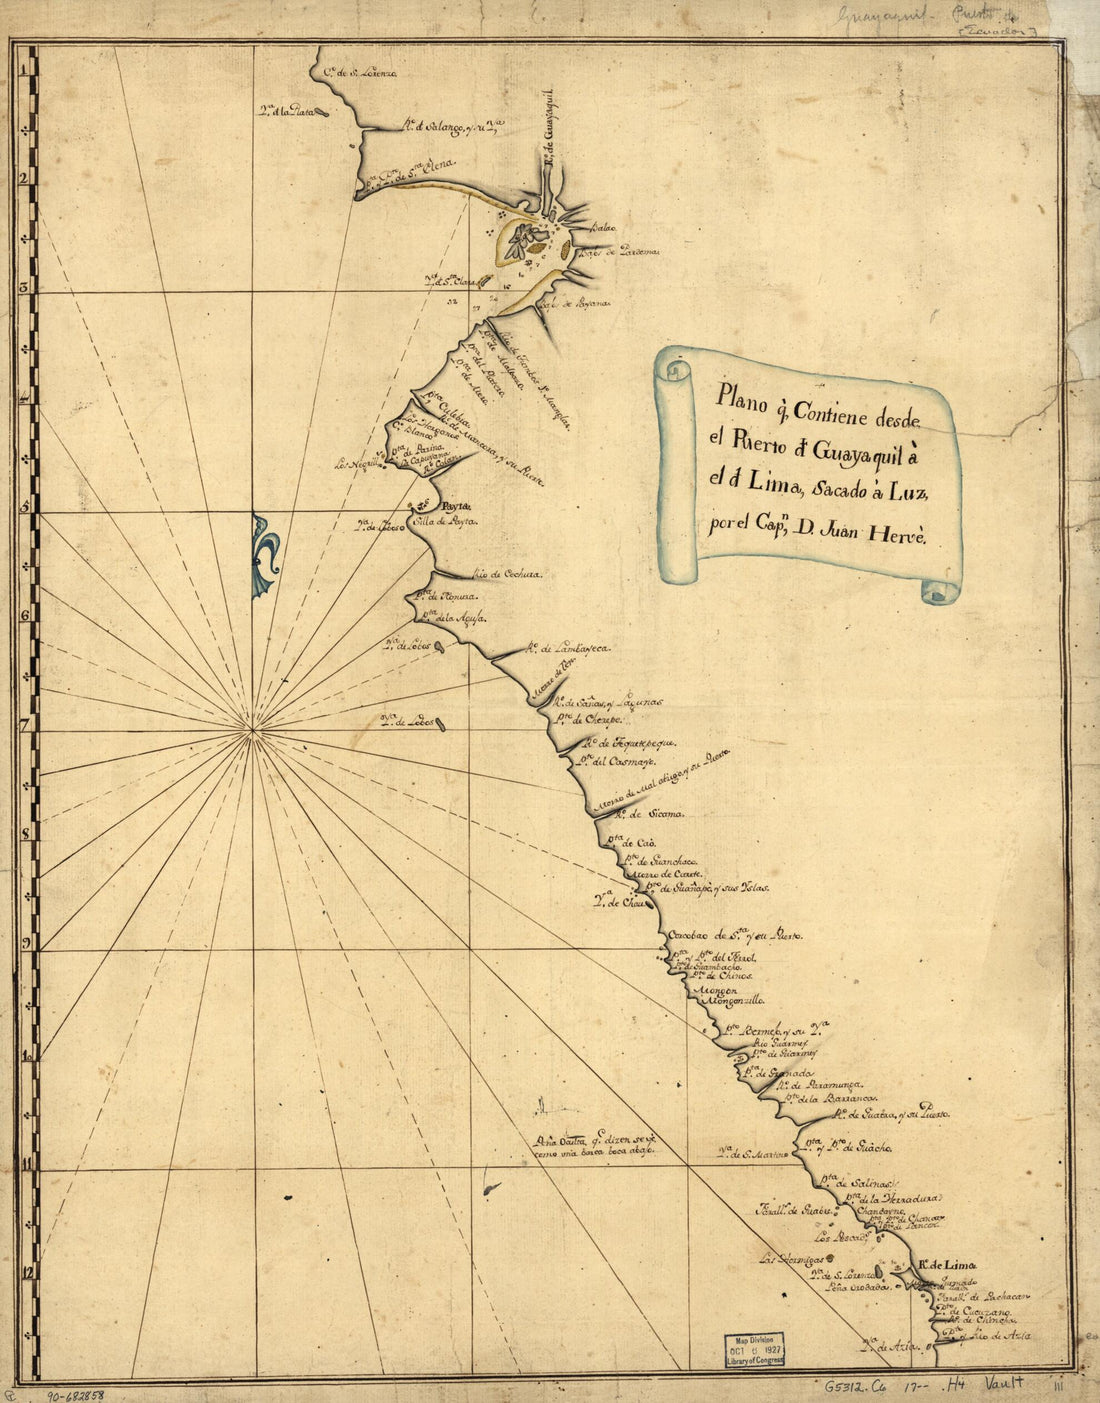 This old map of Plano Q. Contiene Desde El Puerto D. Guayaquil a El D. Lima, Sacado a Luz from 1700 was created by Juan De Hervé in 1700